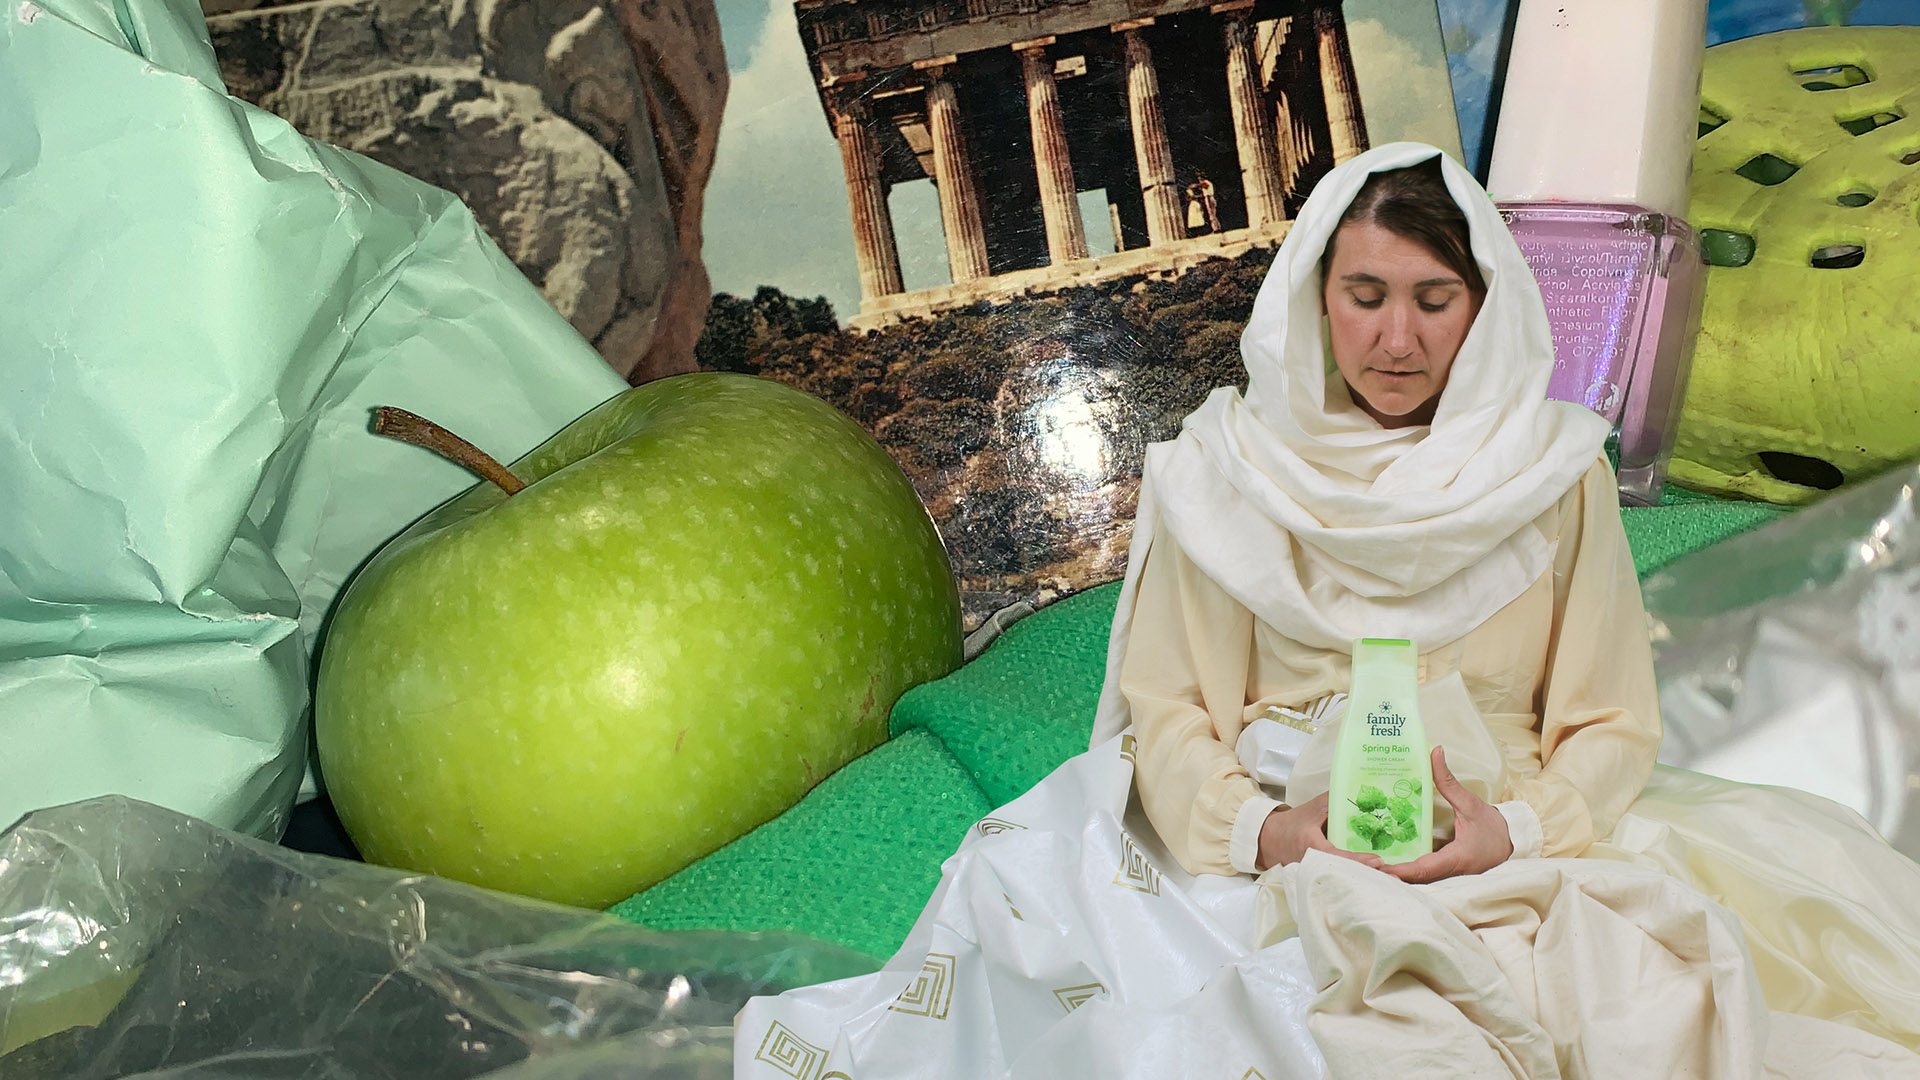 Fotokollage över olika föremål i ovanliga proportioner till varandra. En kvinna i ljus toga och sjal runt huvudet i förgrunden håller i en grön flaska med duschtvål. I barkunden ett enormt grönt äpple, ett hopskrynklat mintgrönt papper, ett vykort föreställande Akropolis, en gigantisk flaska med rosa nagellack och en starkt grön foppatoffla.  